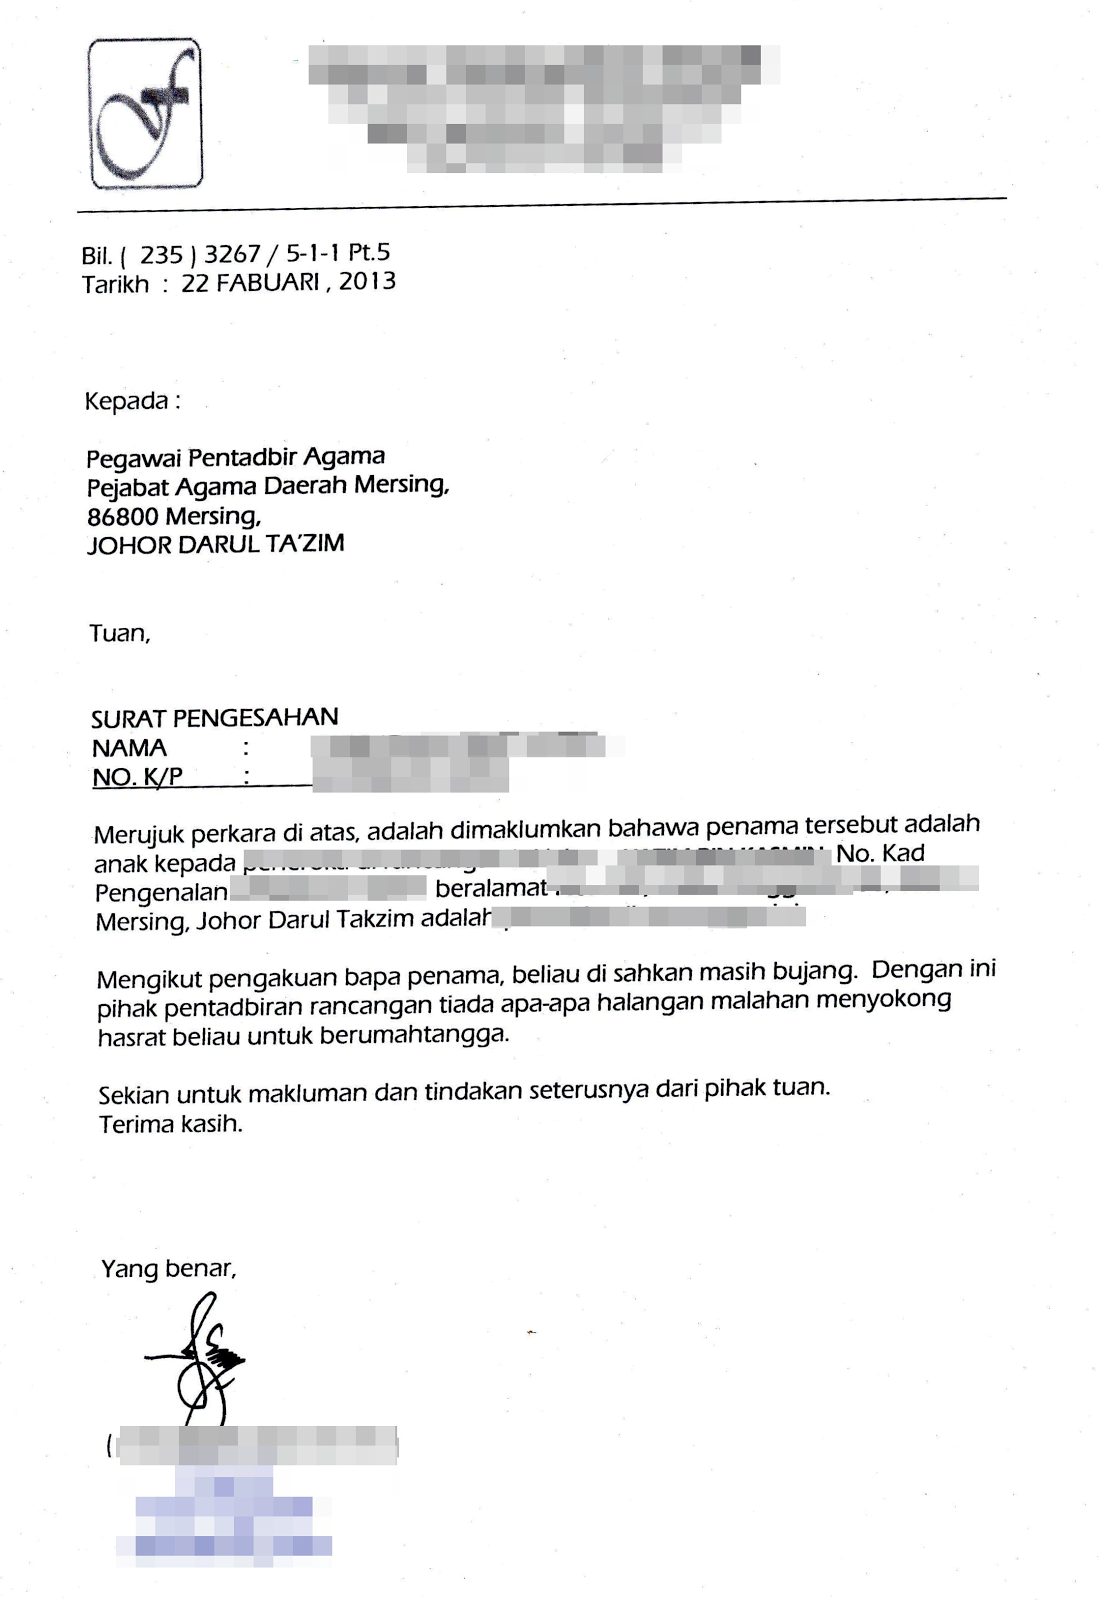 Jurnal Kahwin Aya Hantar borang permohonan kebenaran nikah (Johor)